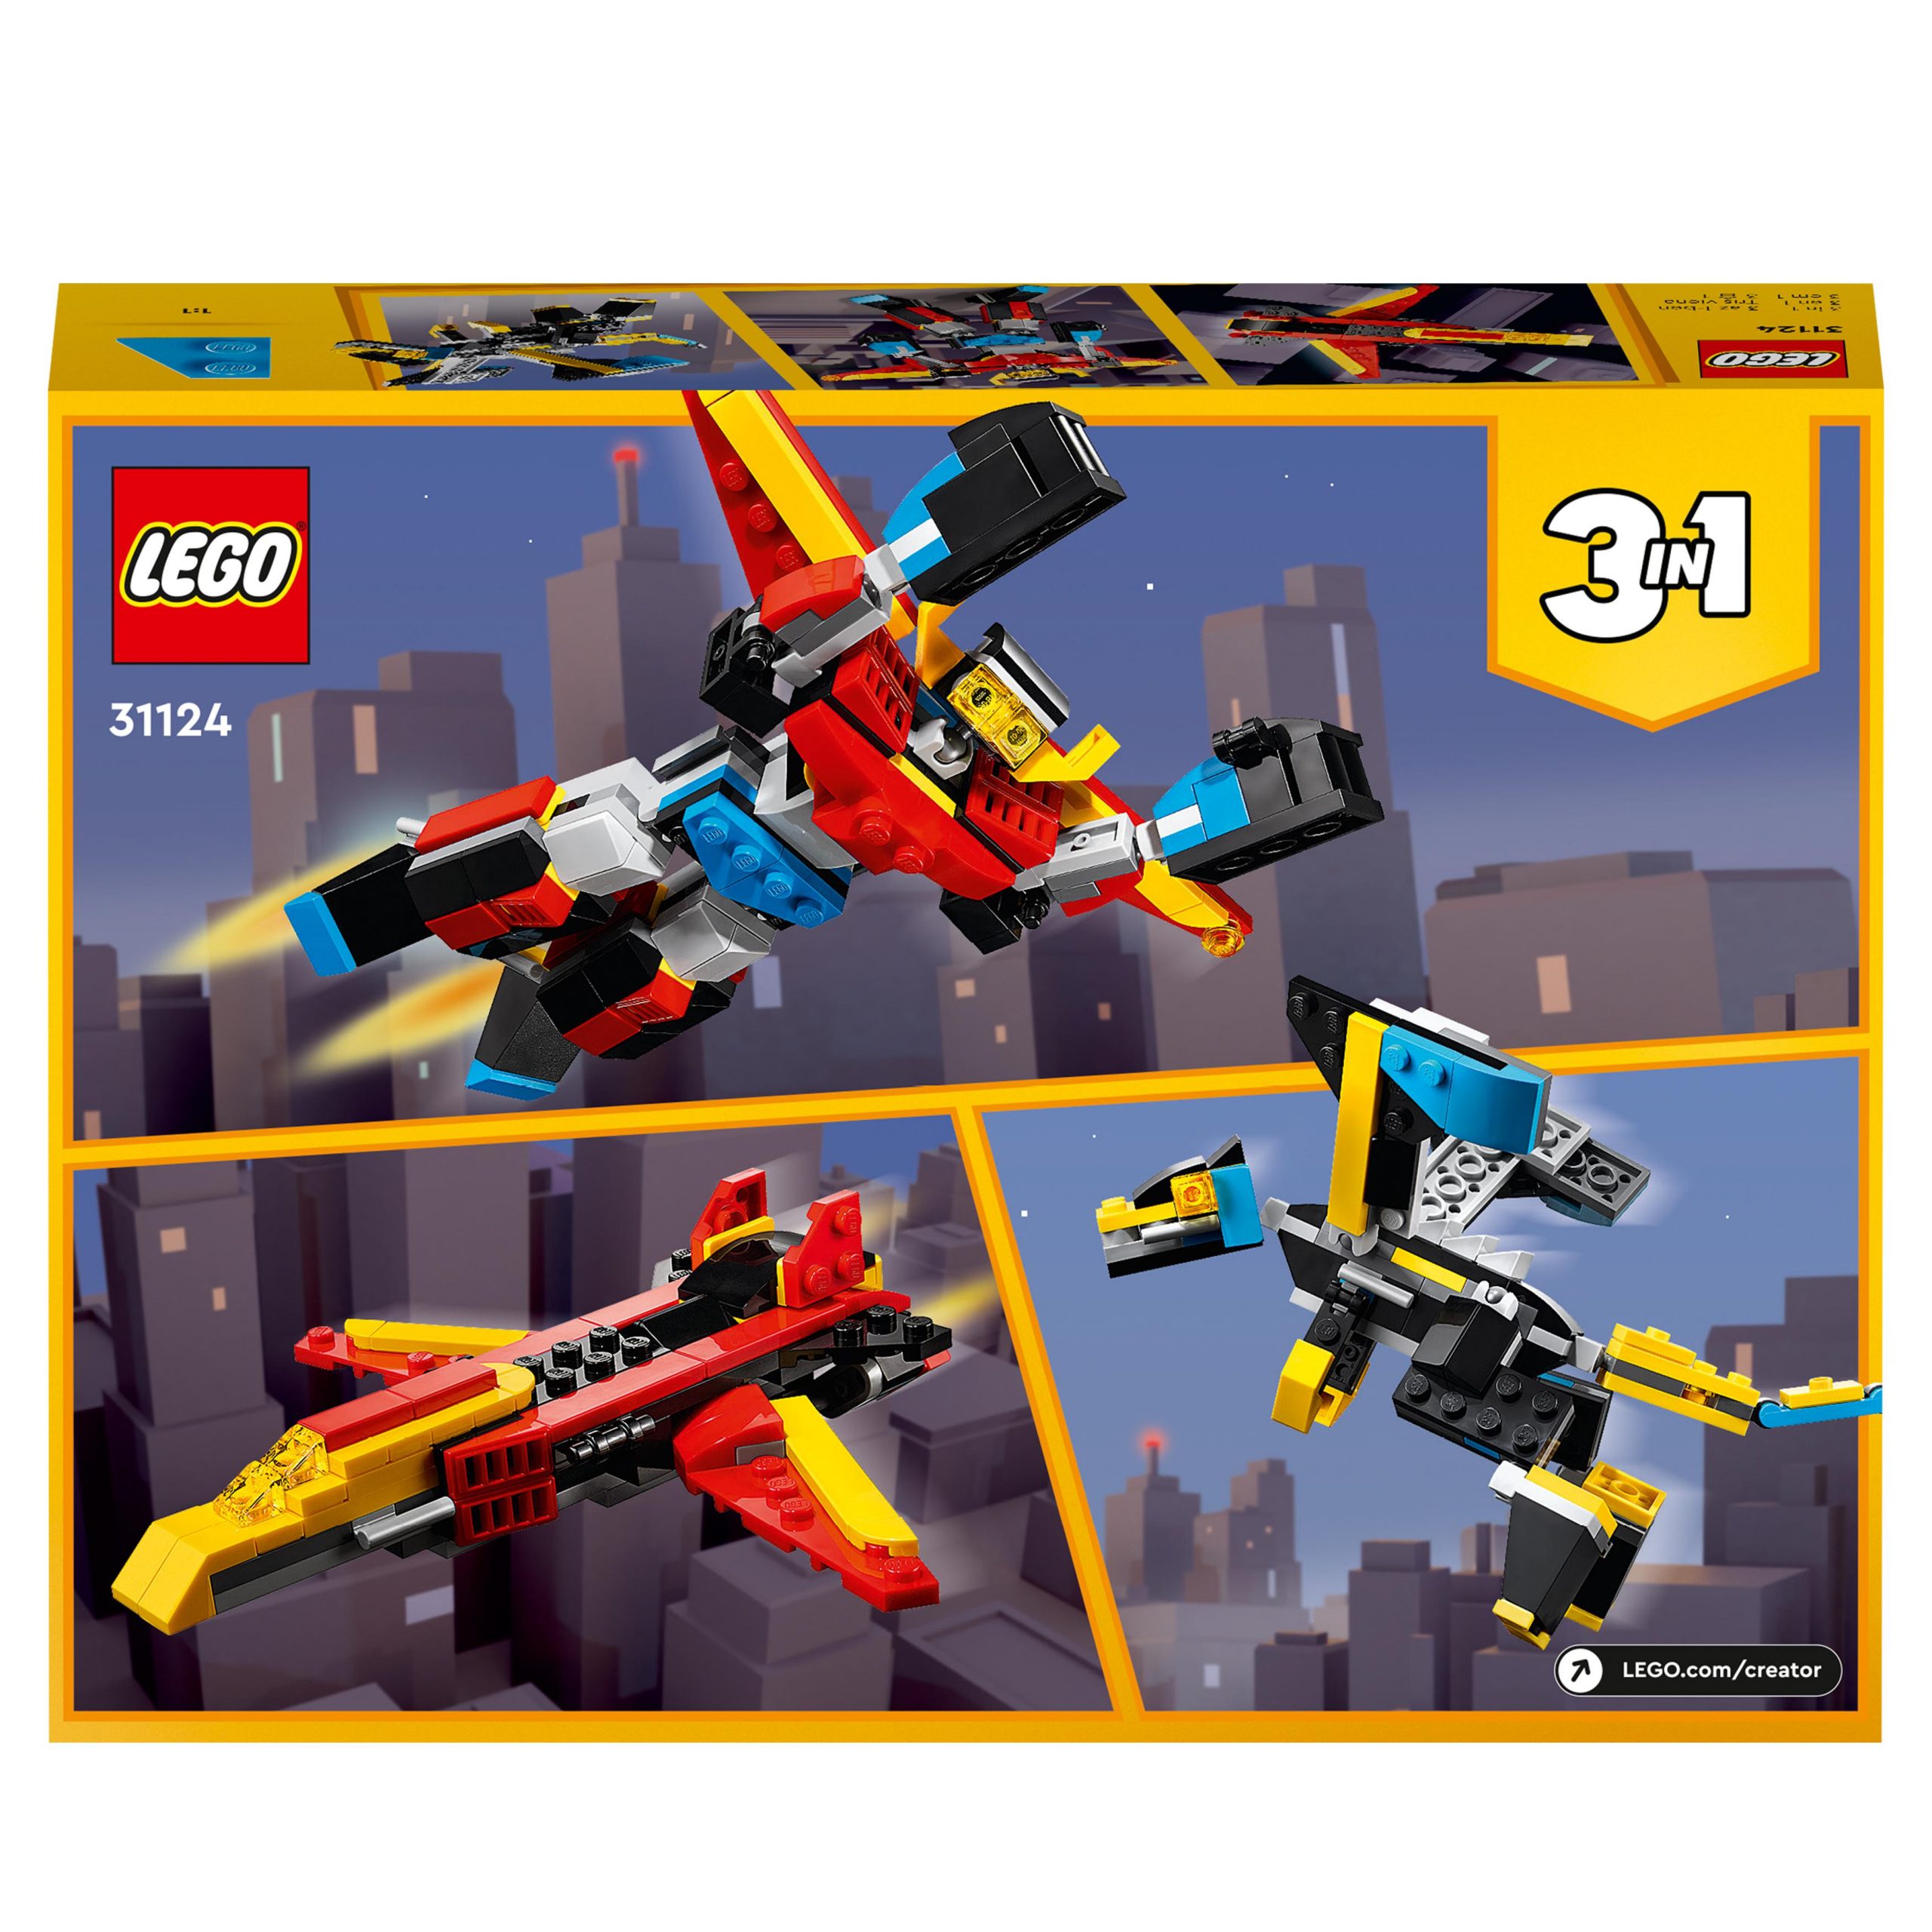 Lego creator 31124 3in1 super robot, set di costruzioni in mattoncini, aereo e drago giocattolo per bambini di 6+ anni - LEGO CREATOR, Lego